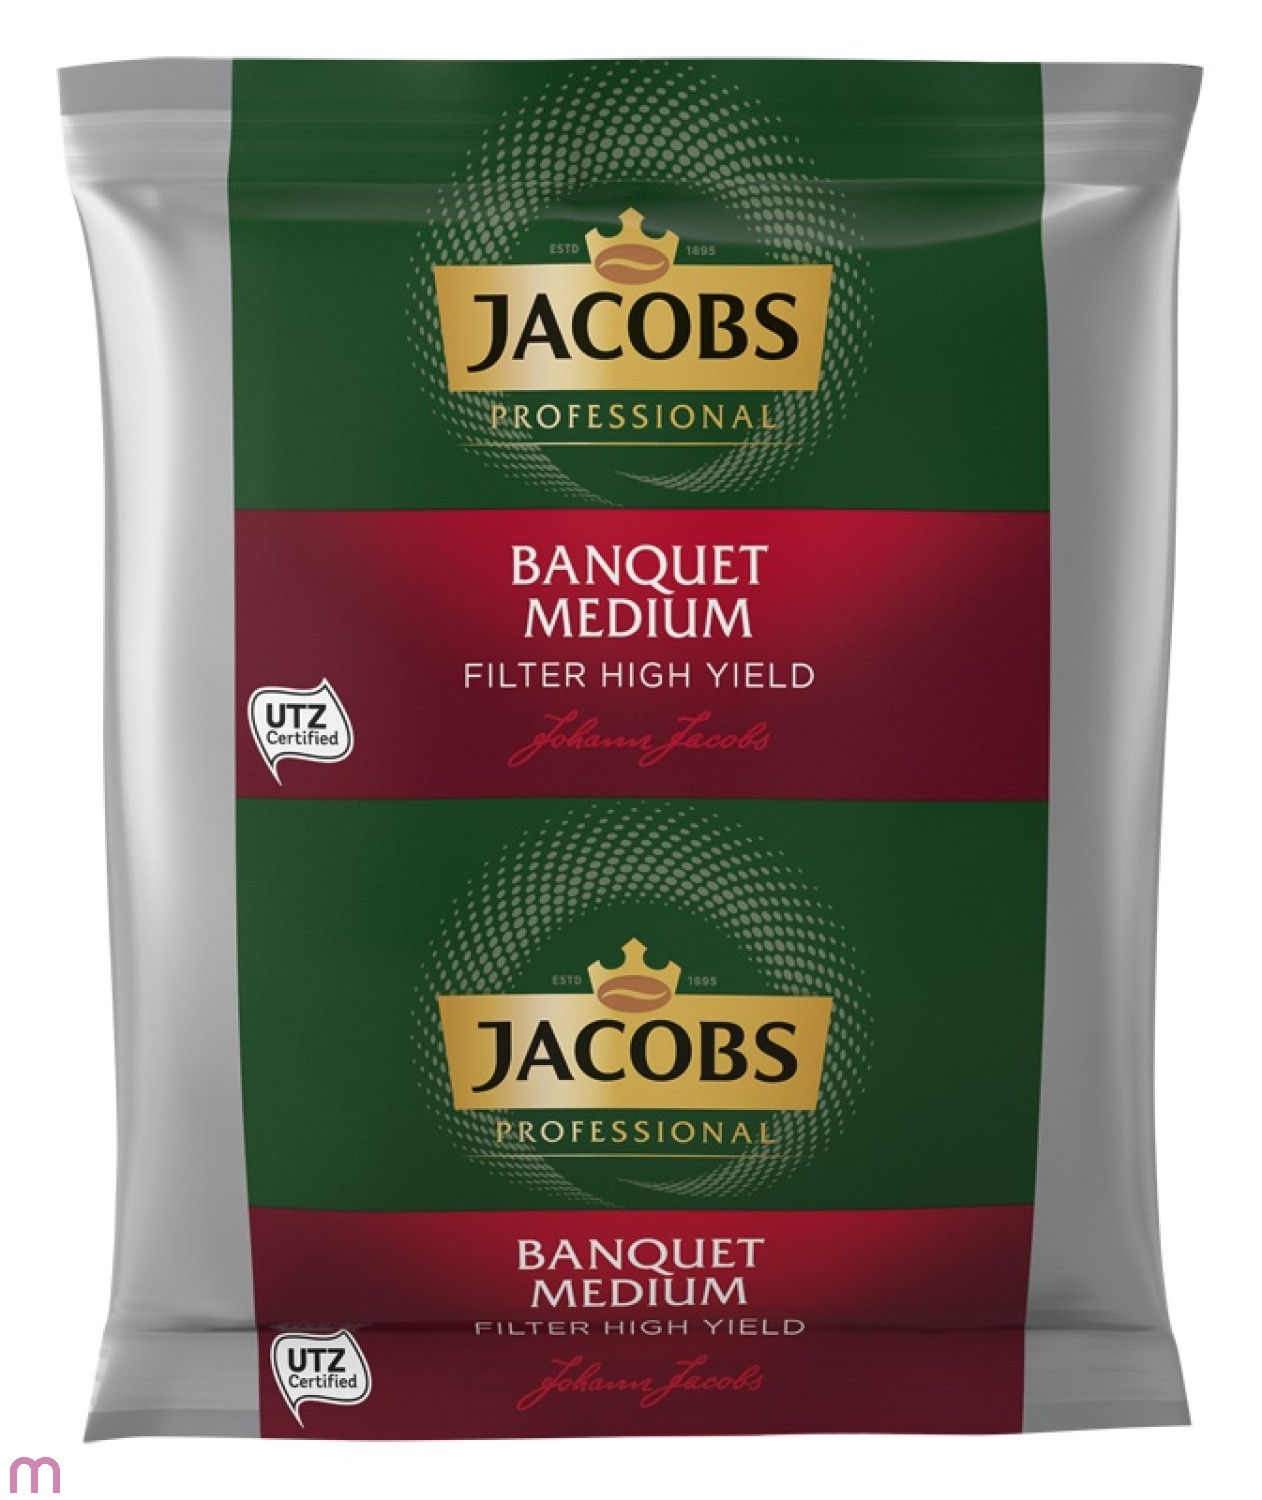 Jacobs Banquet Medium Filter High Yield 72 x 70 g, gemahlen, UTZ zertifiziert